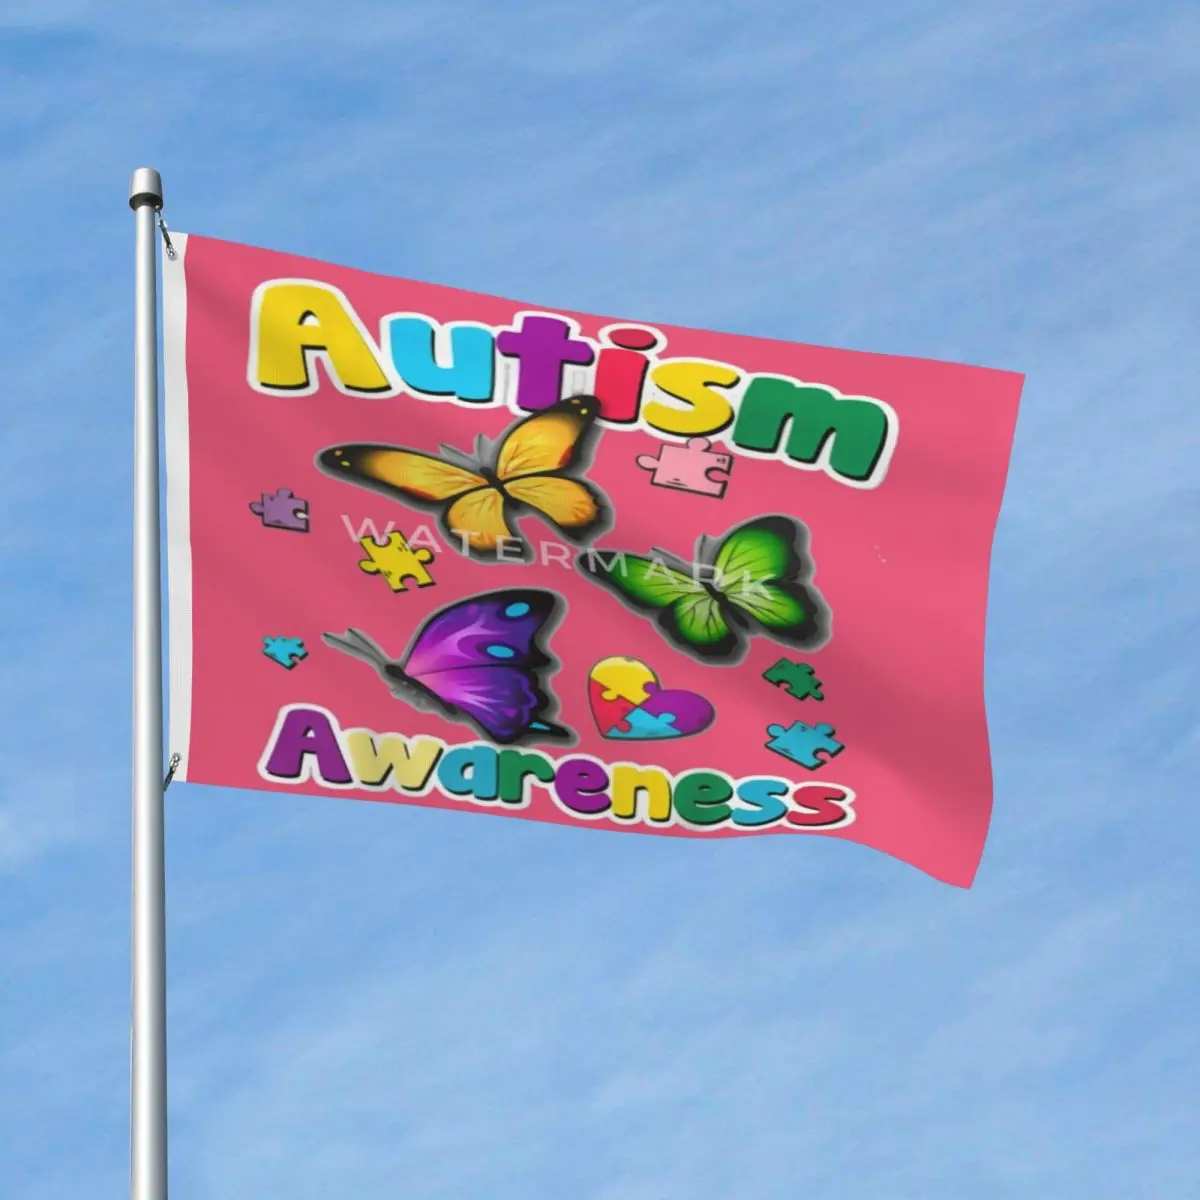 

Осведомленность об аутизме, ткань из полиэстера с металлическими Люверсами, яркие цвета драпировки